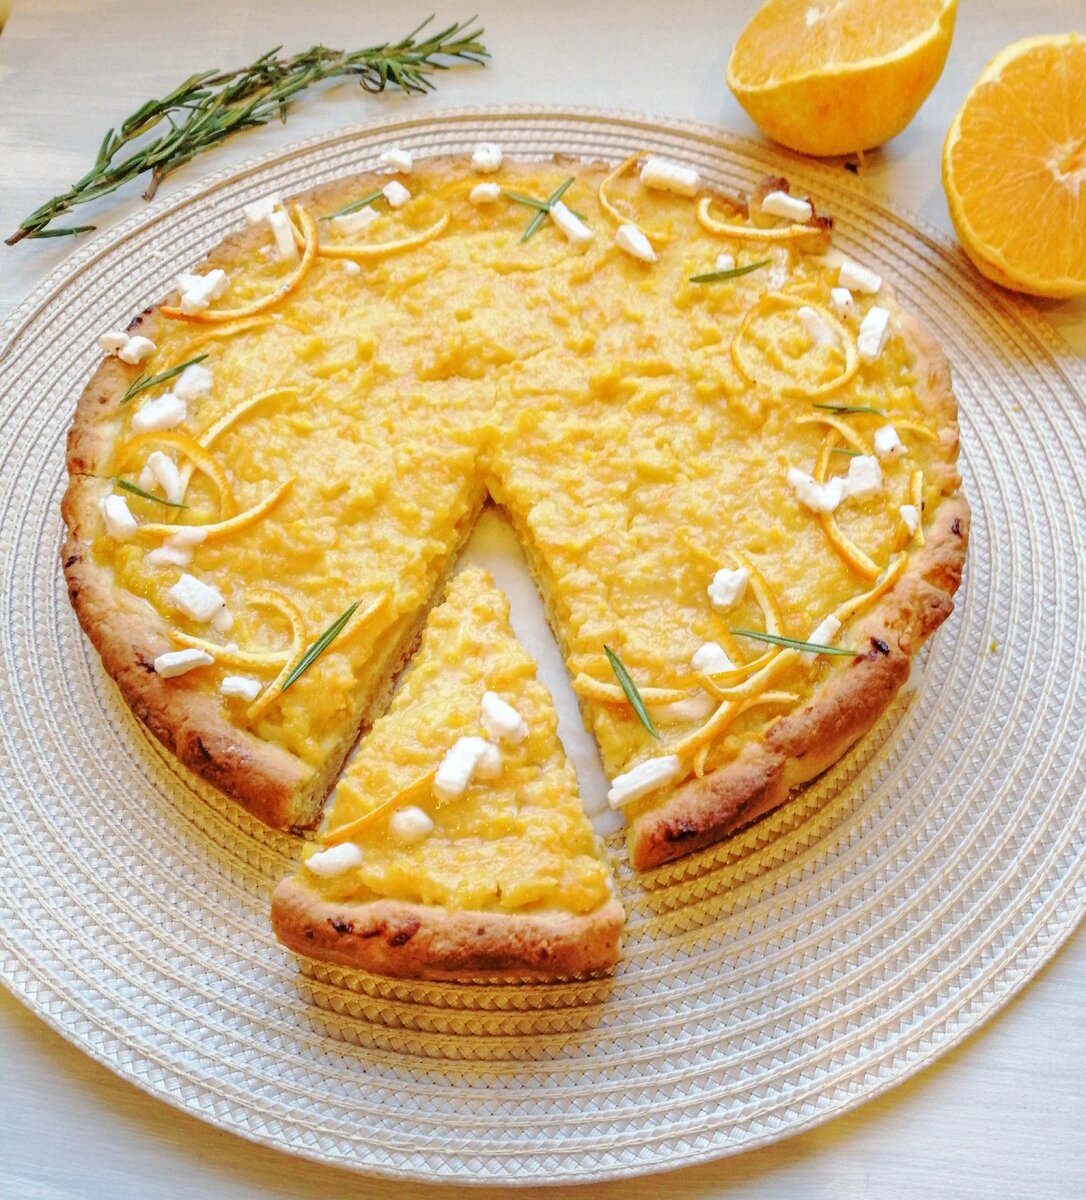 Апельсиновый пирог рецепт с фото в духовке с